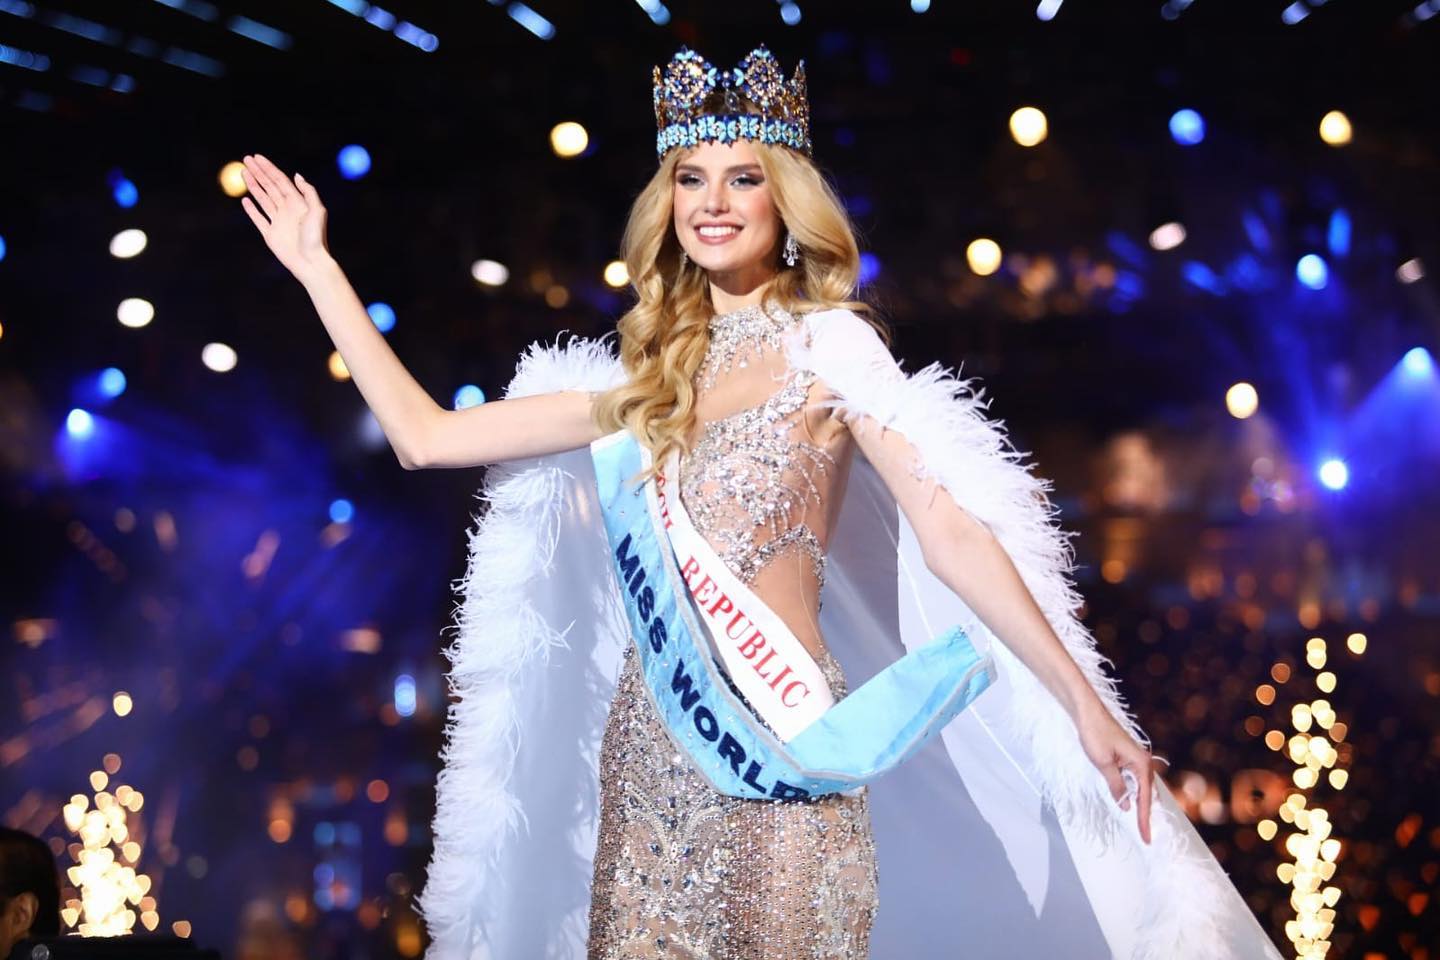 Người đẹp Cộng hòa Séc vừa đăng quang, Miss World “gặp biến” chưa từng có trong lịch sử, fan Việt cũng liên quan - ảnh 7